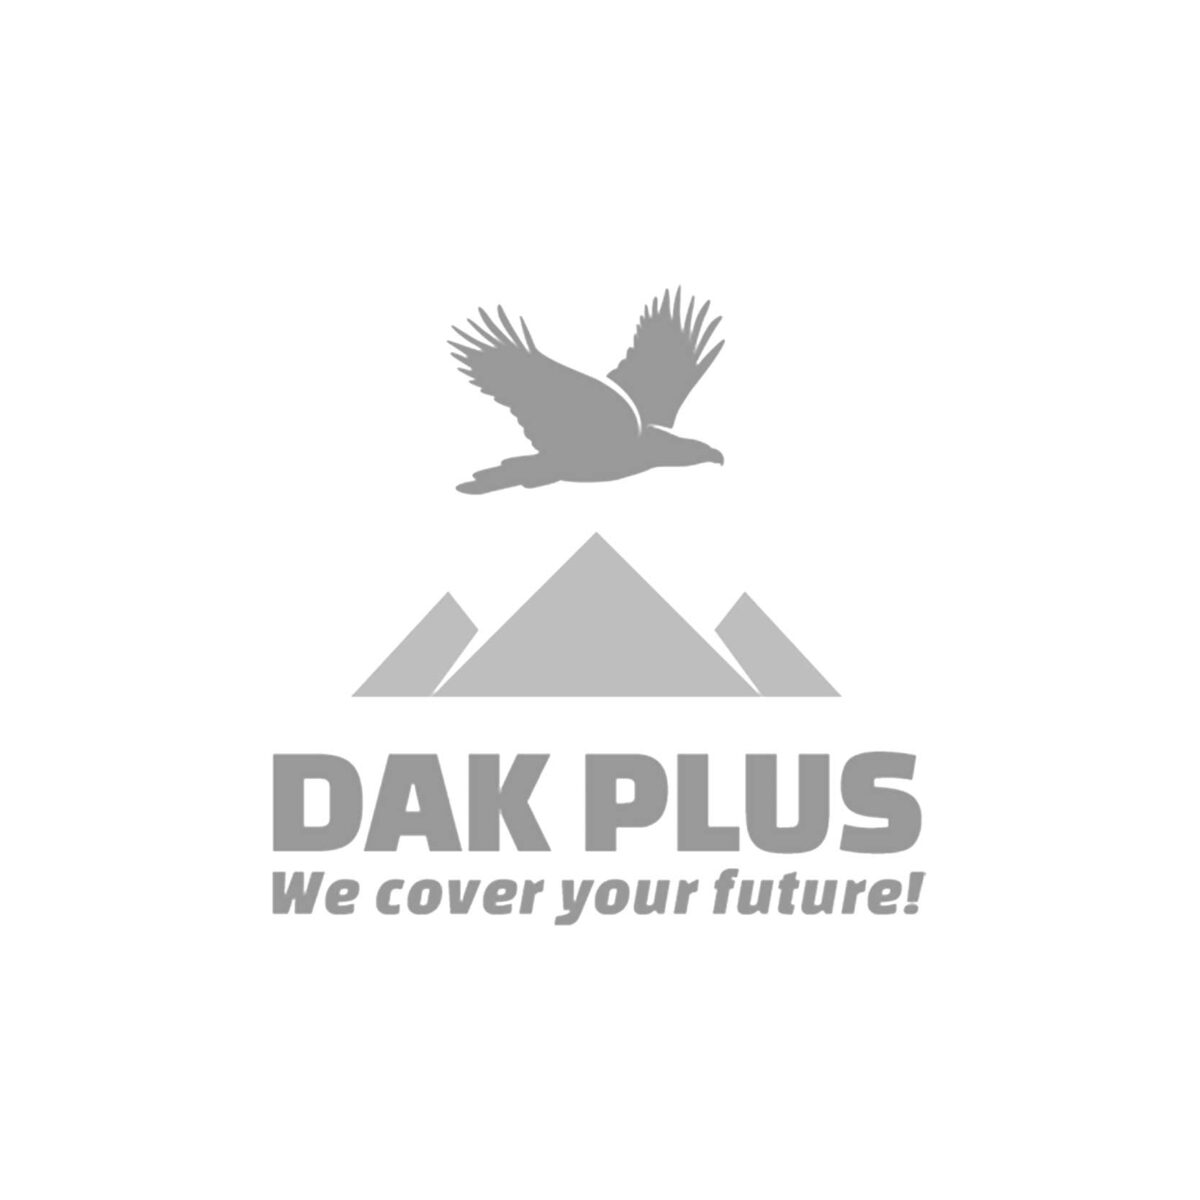 Dak Plus